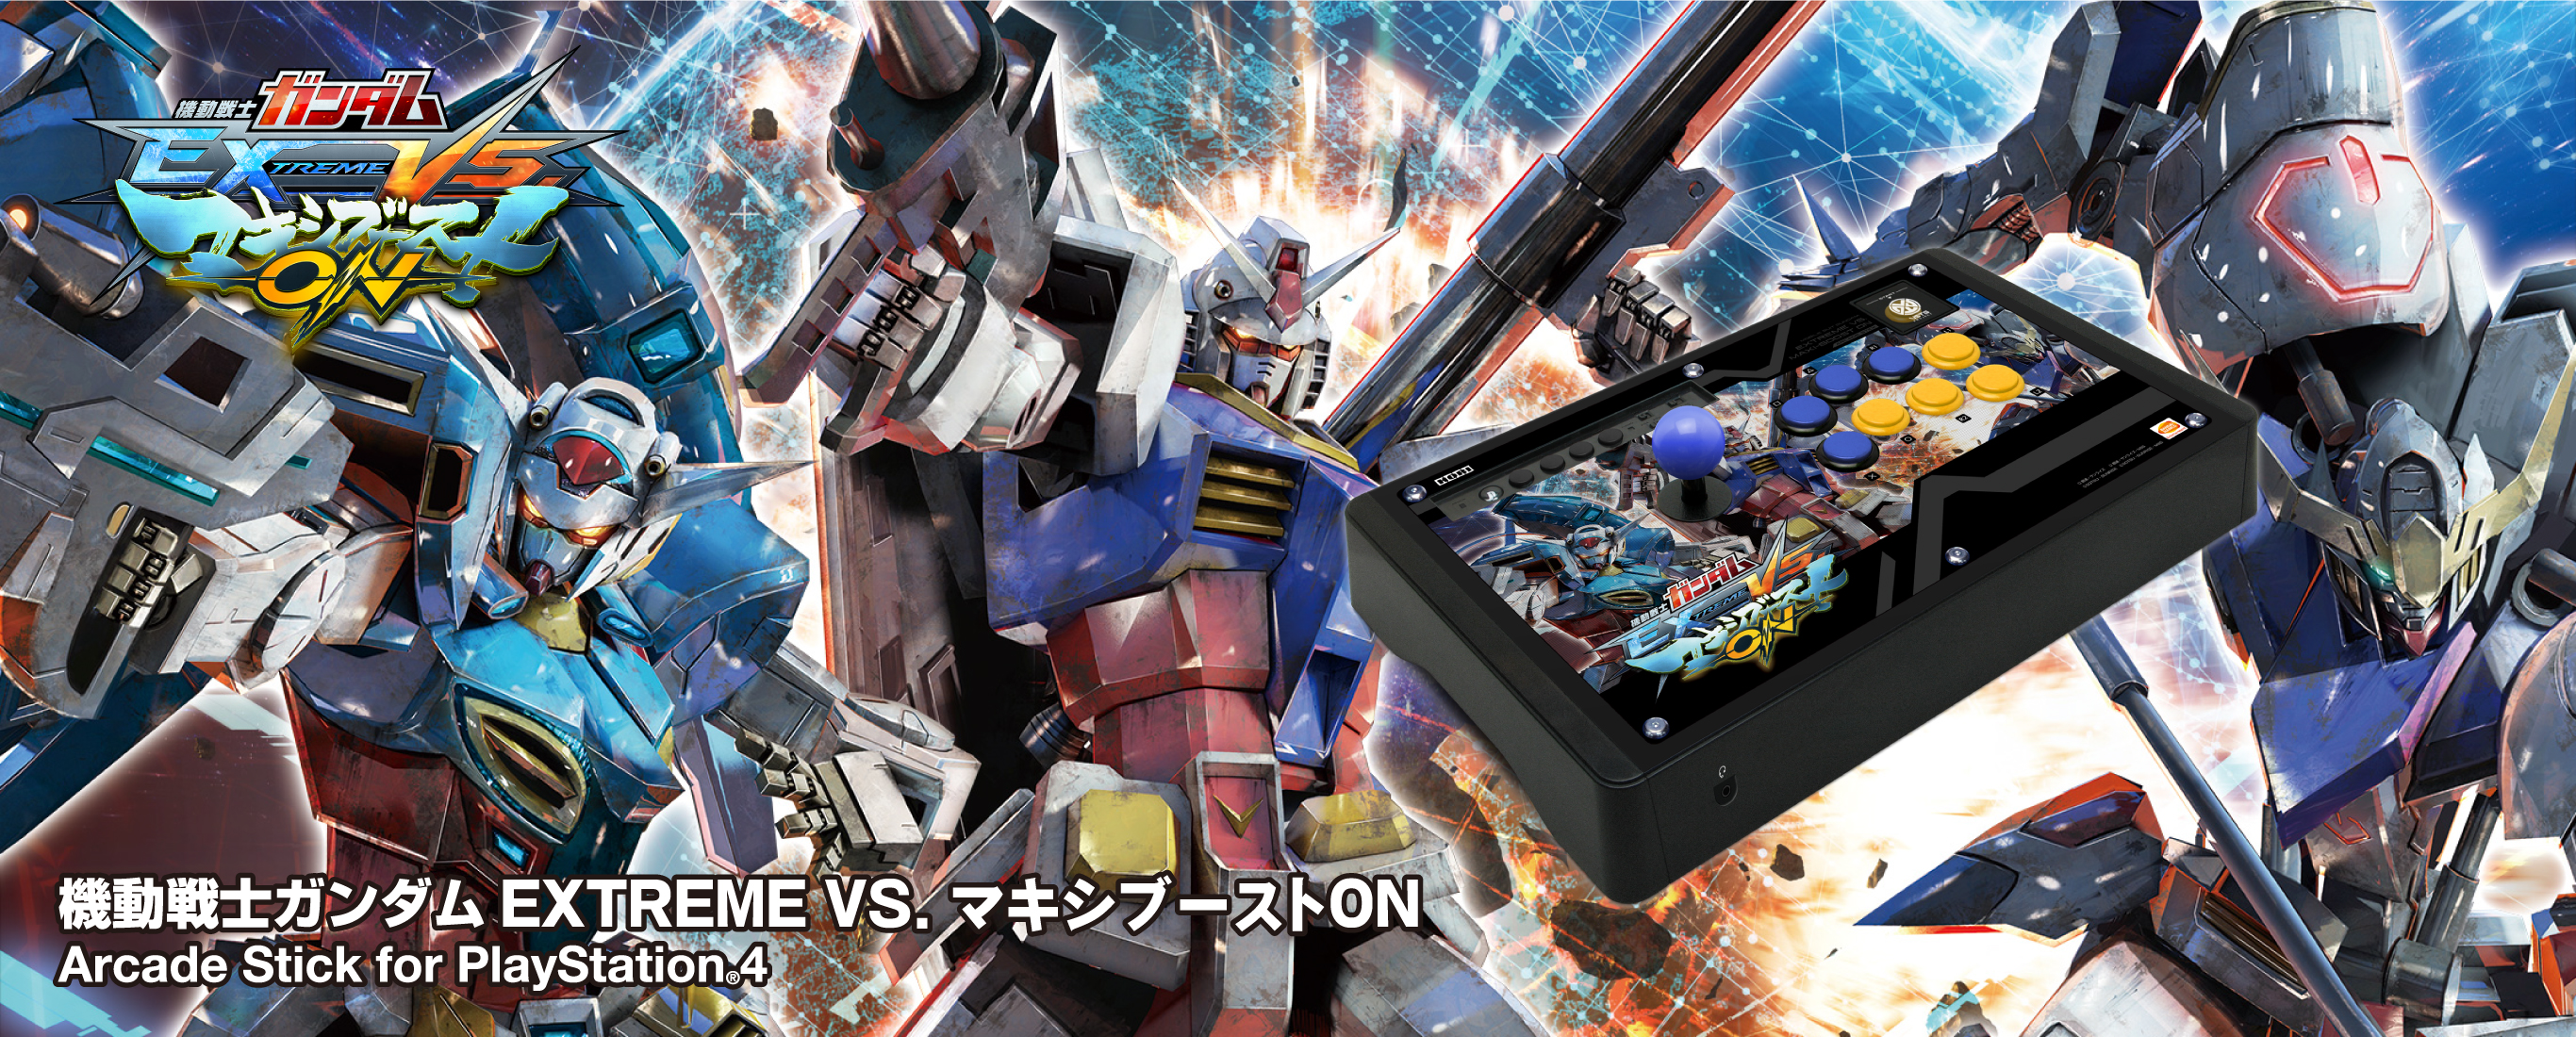 株式会社 HORI | 機動戦士ガンダム EXTREME VS. マキシブーストON 